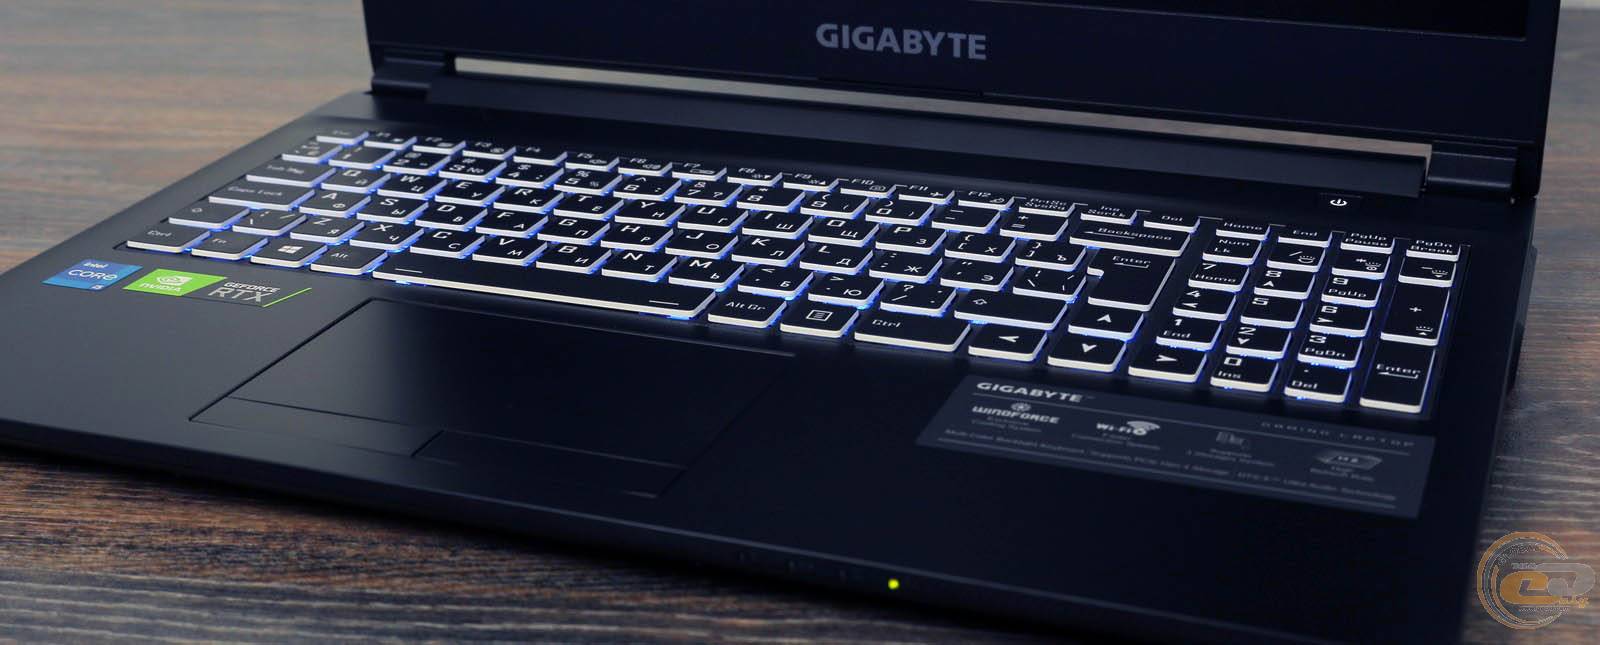 Gigabyte g5 kc. Gigabyte g5. Ноутбук Gigabyte g5 ge. Gigabyte g5 KD. Gigabyte g5 MD-51de123sd.